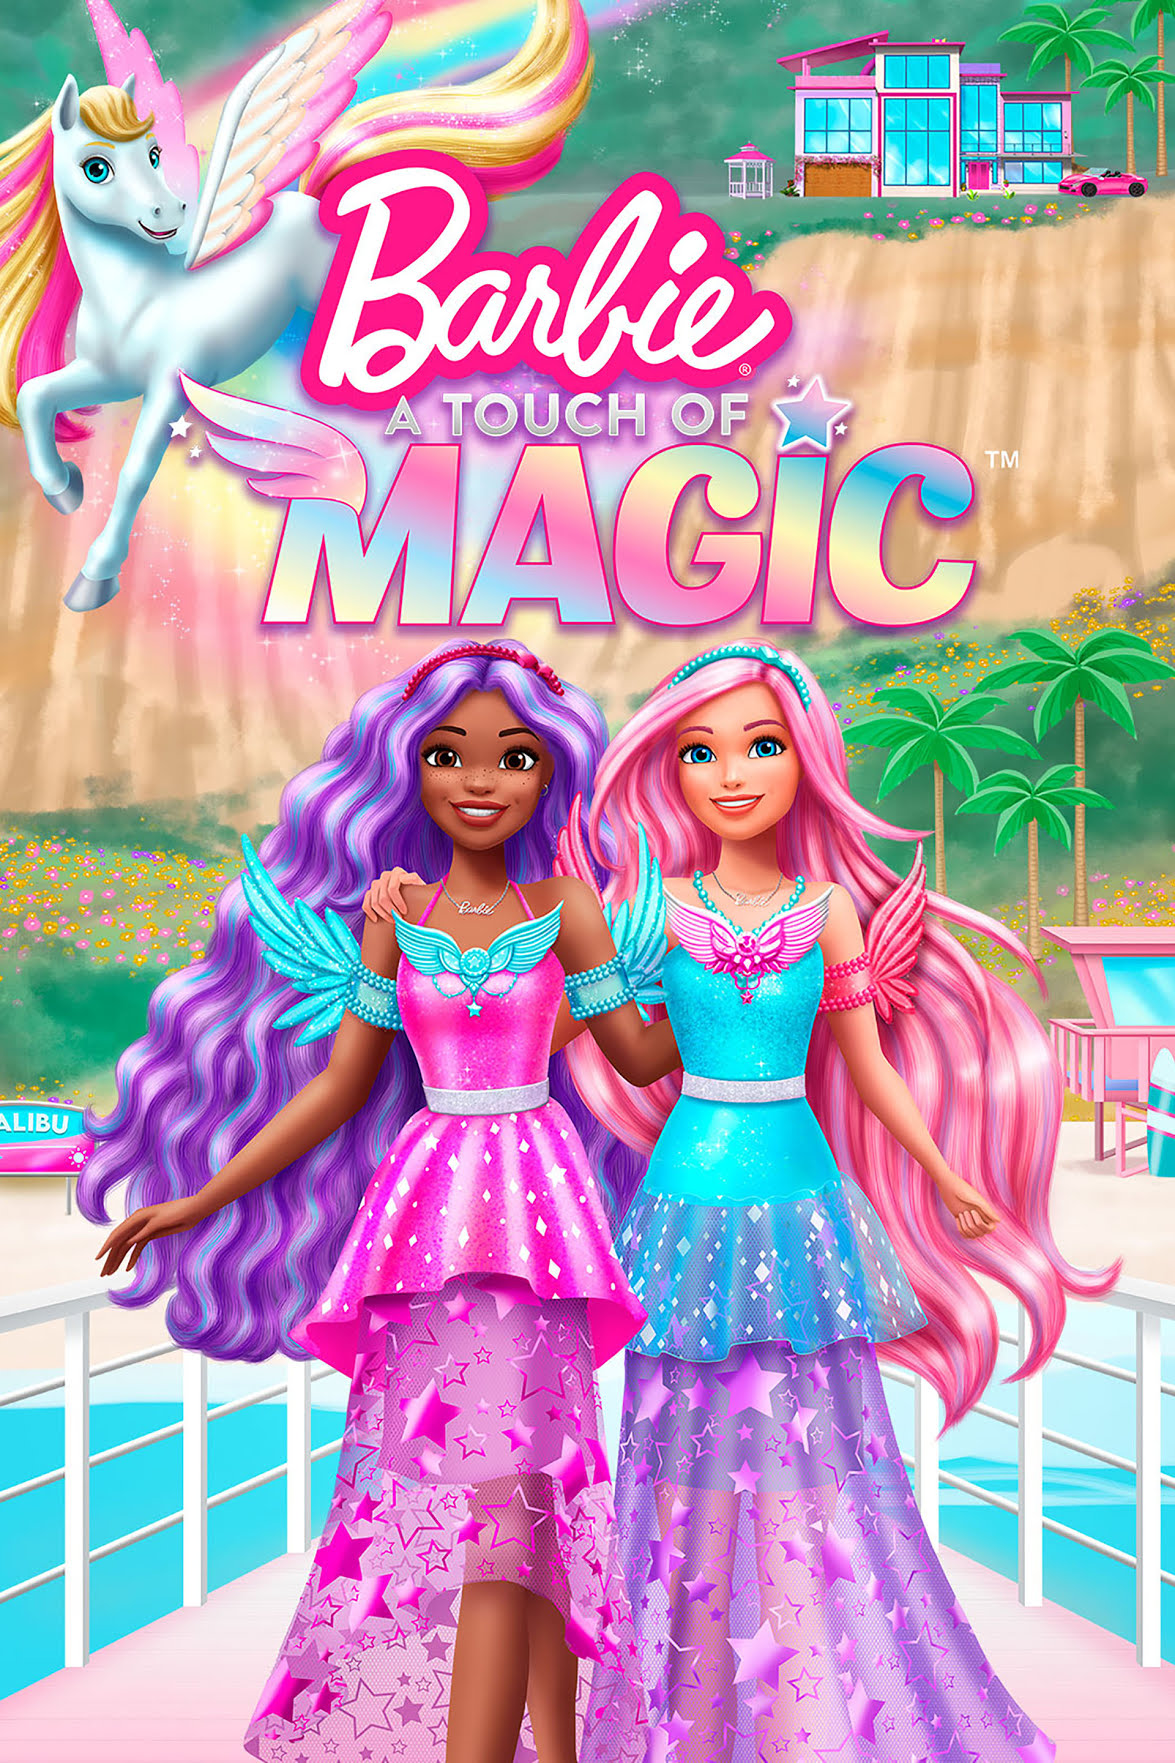 Barbie A Touch of Magic บาร์บี้ สัมผัสแห่งเวทมนตร์ พากย์ไทย